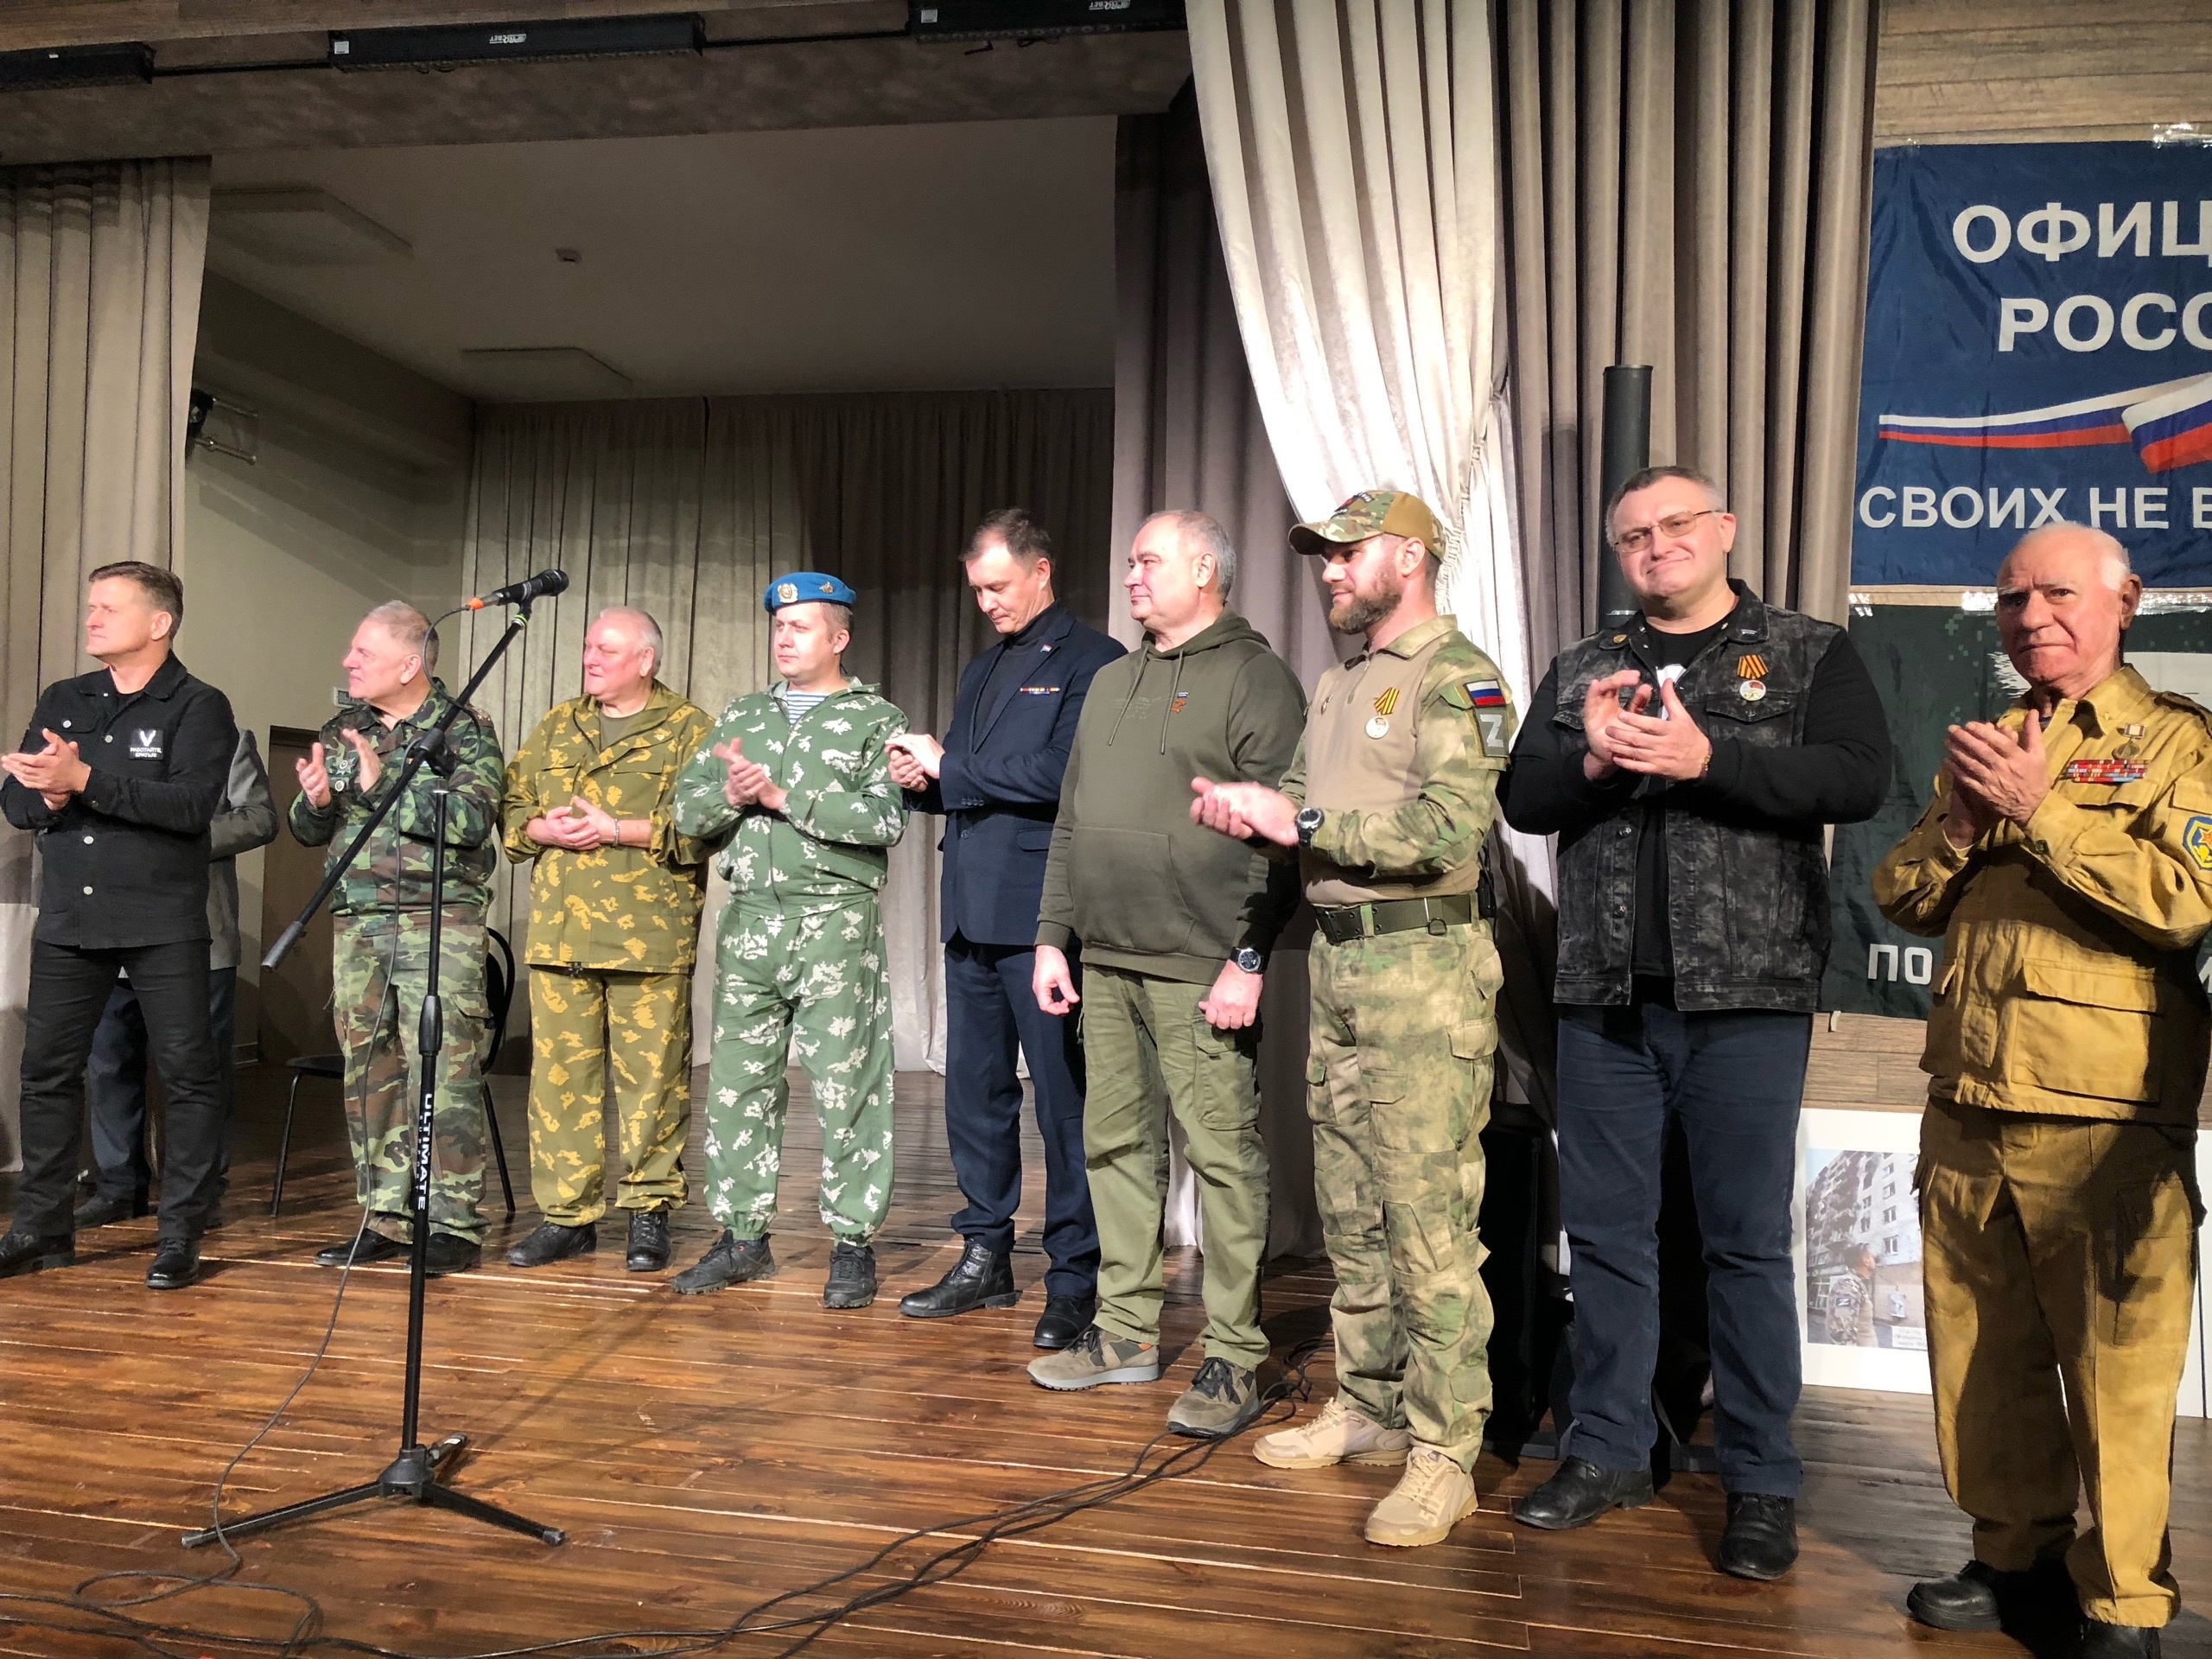 «Za Победу»: в Самарской области проходит патриотический фестиваль бардовской песни в поддержку специальной военной операции